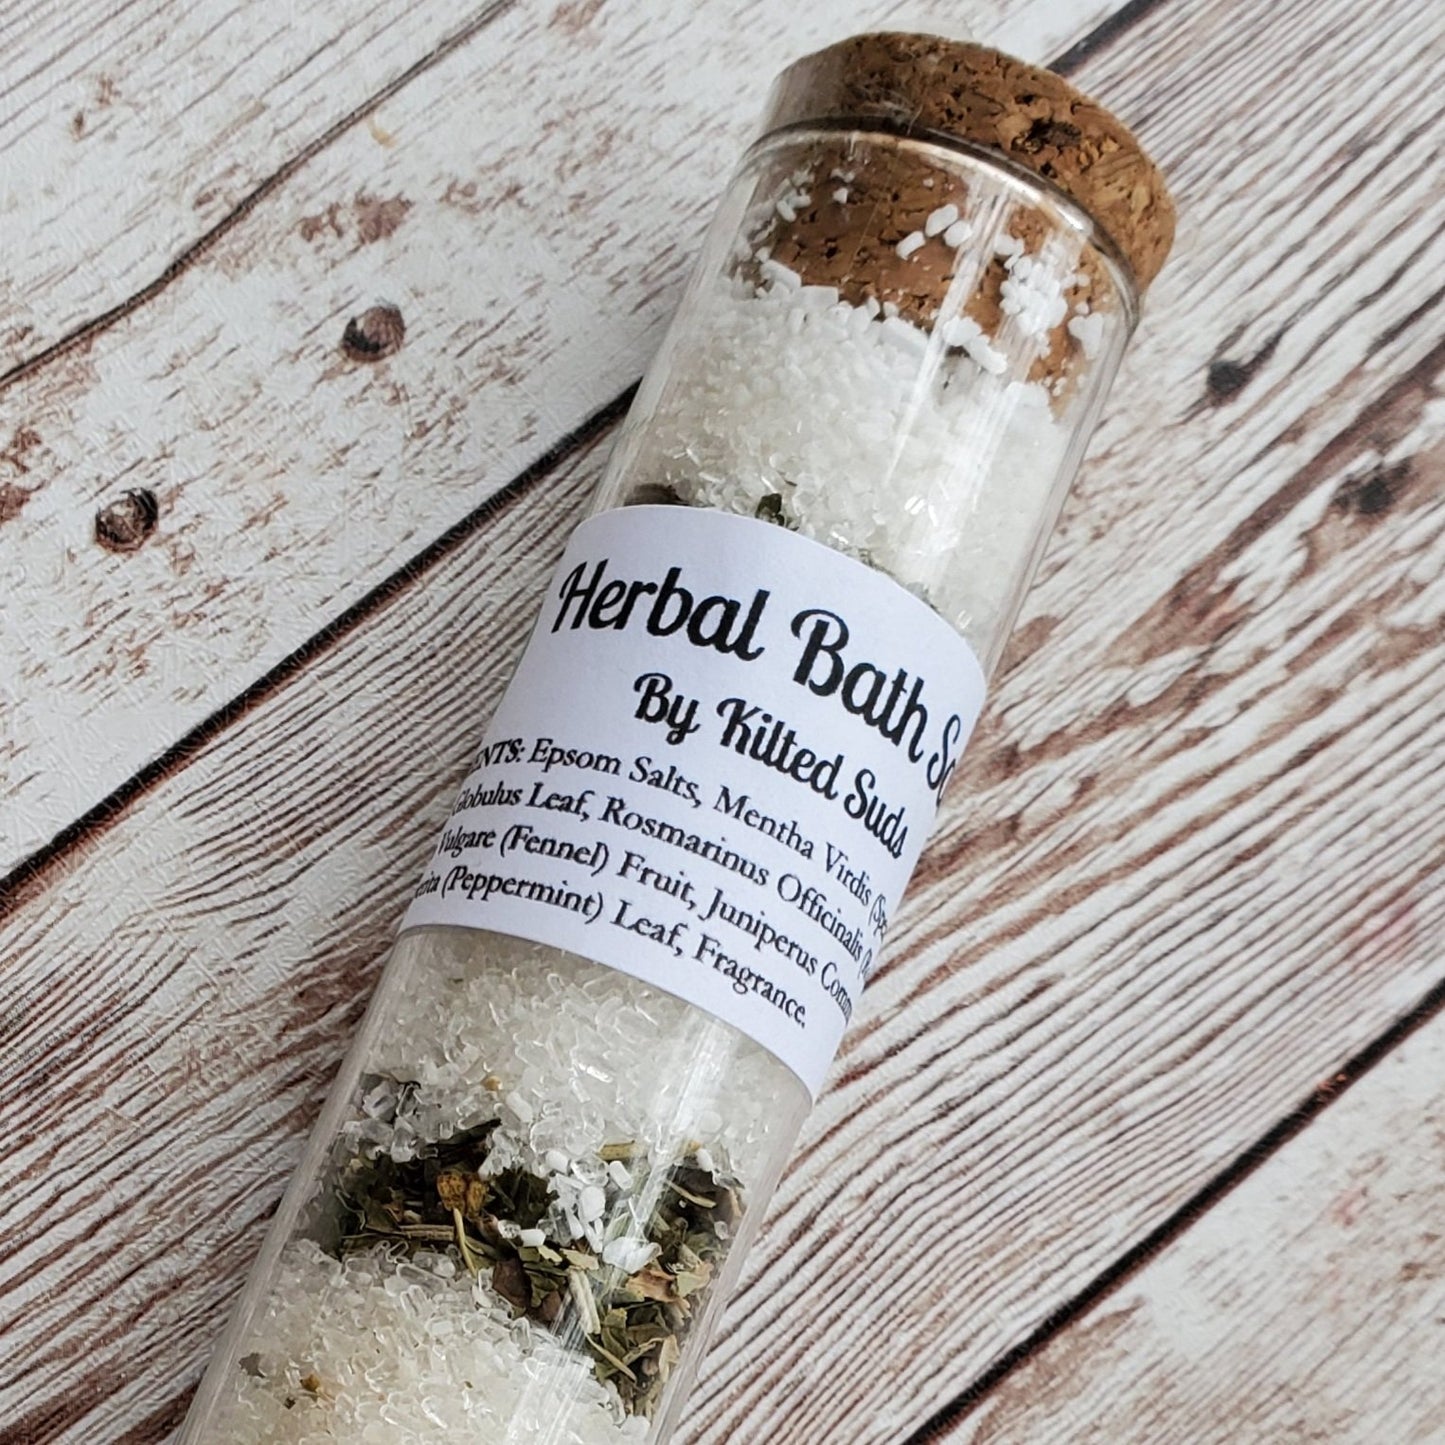 Herbal Bath Salts - Kilted Suds